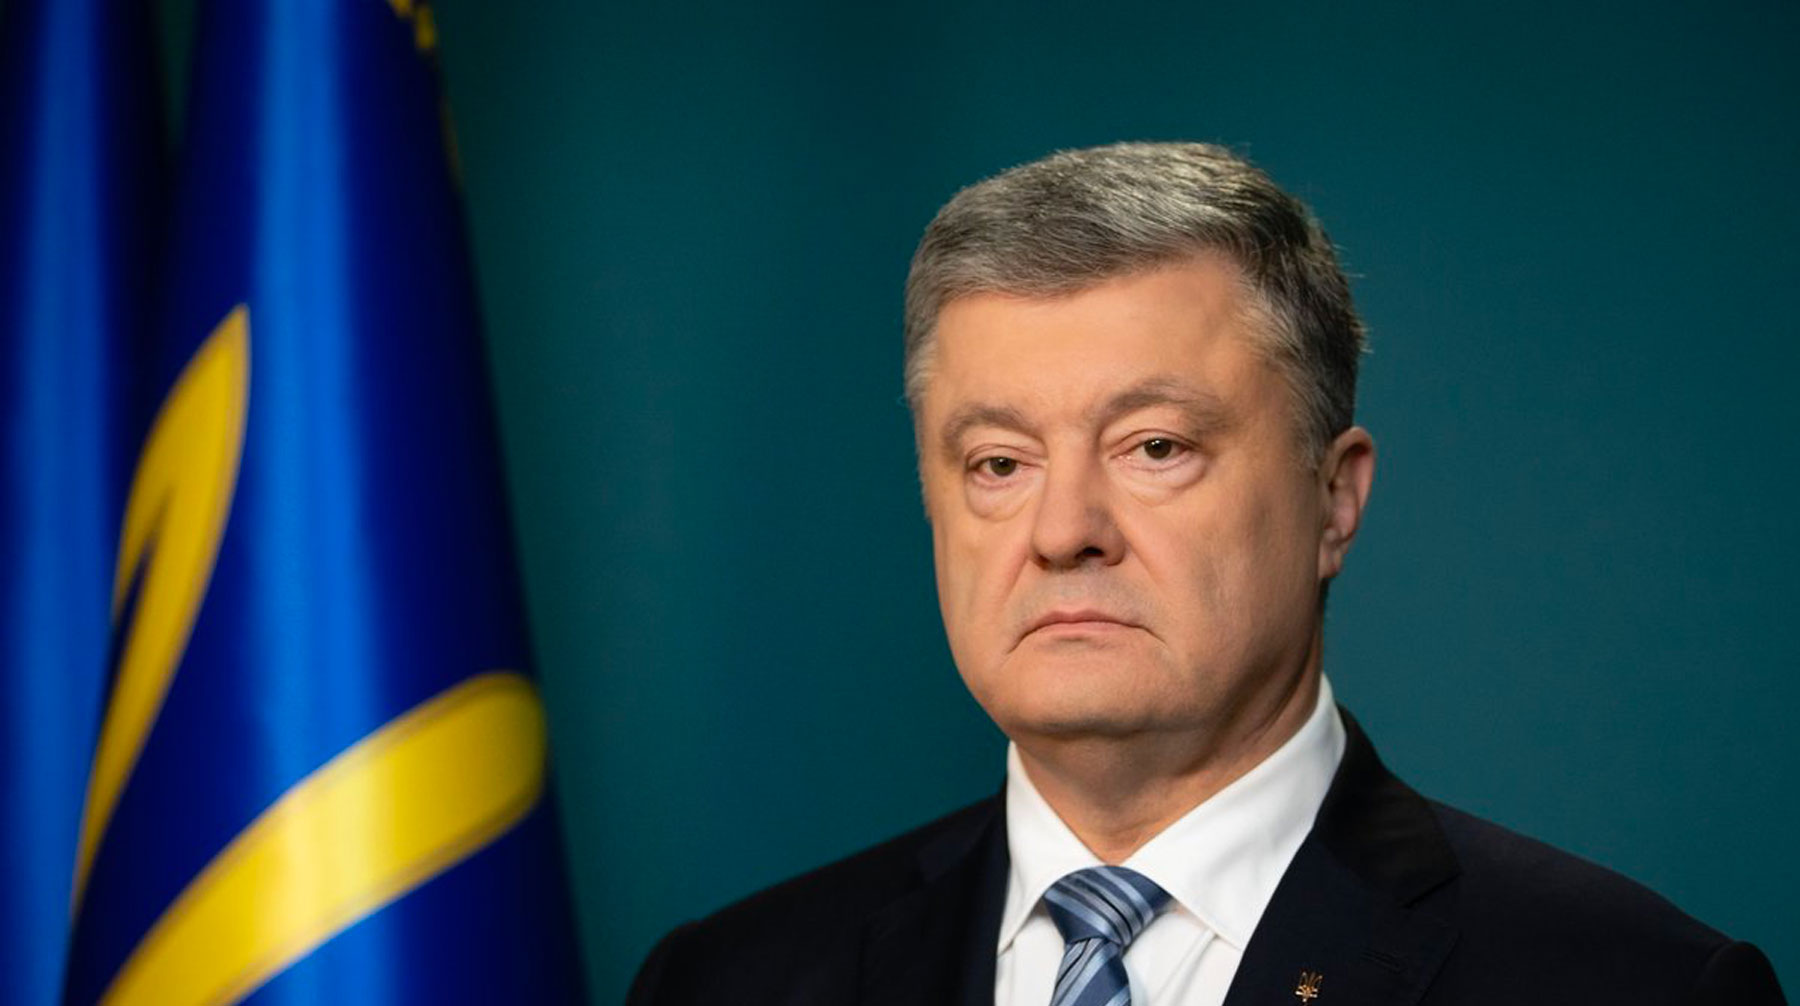 Украинский бизнесмен заявил, что плохо относится к экс-президенту Украины не по личным причинам Фото: © GLOBAL LOOK press / Petro Poroshenko